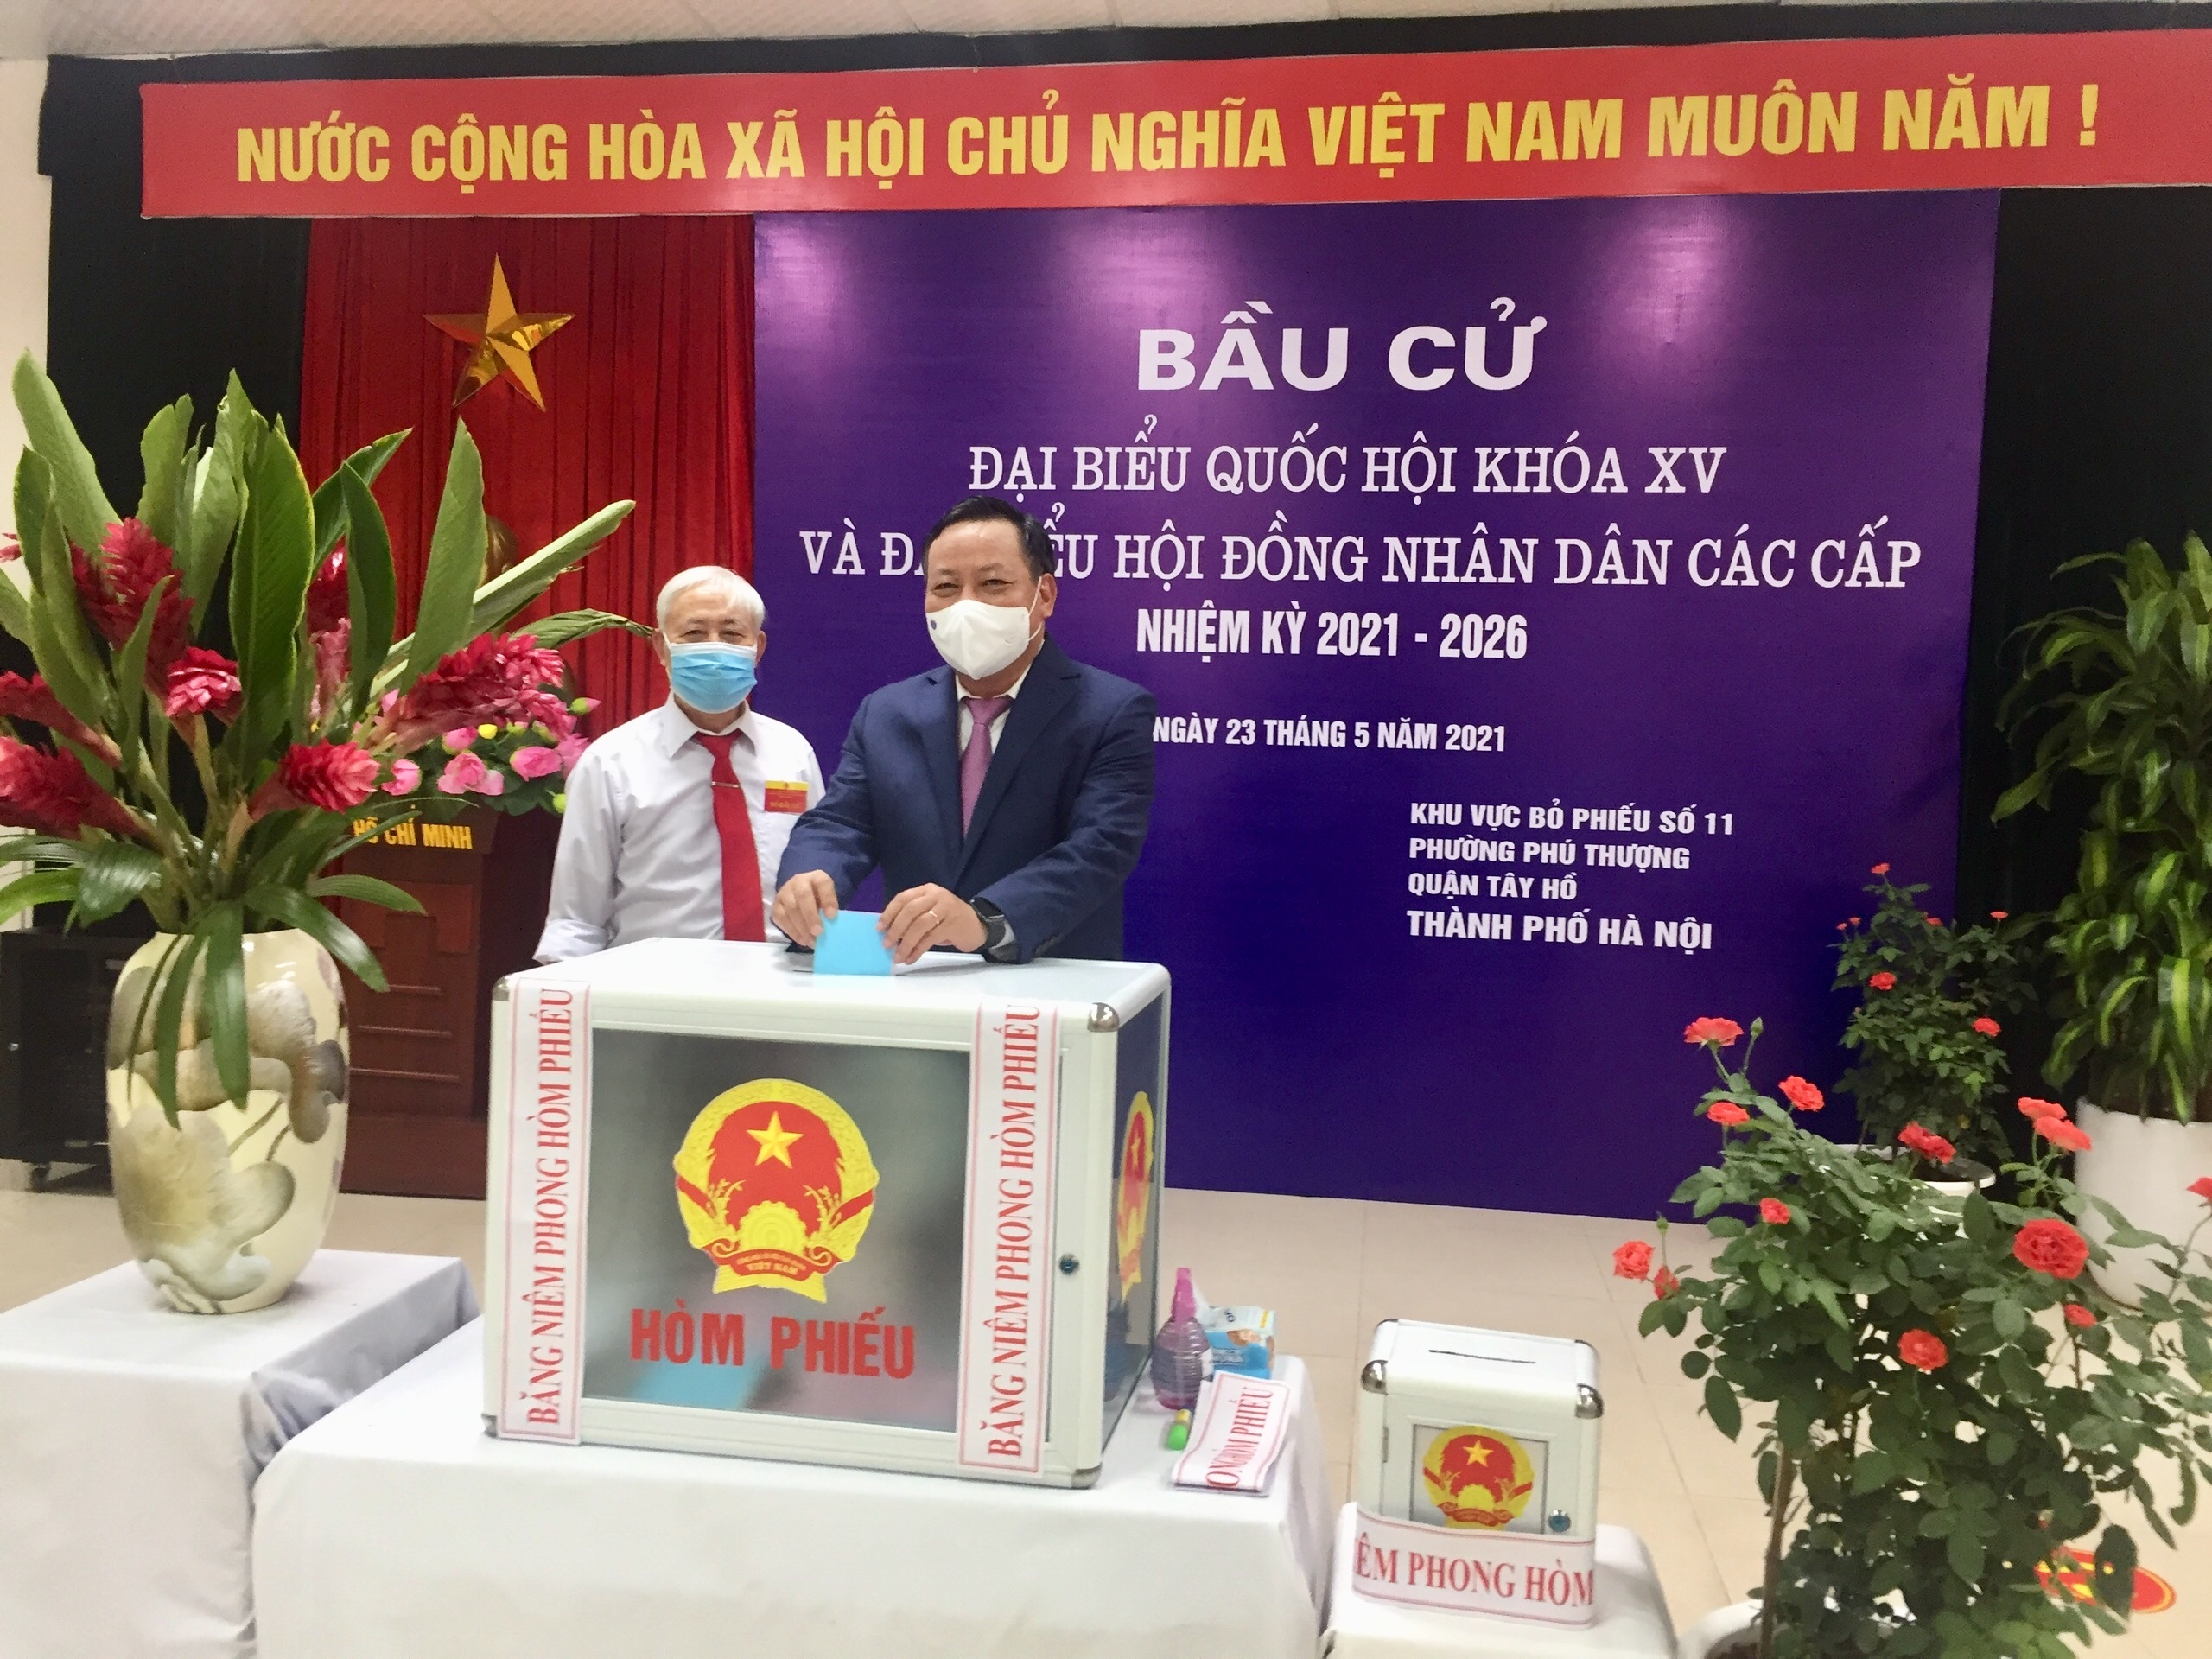 Đồng chí Nguyễn Văn Phong, Phó Bí thư Thành ủy bỏ phiếu tại khu vực bỏ phiếu số 11, phường Phú Thượng